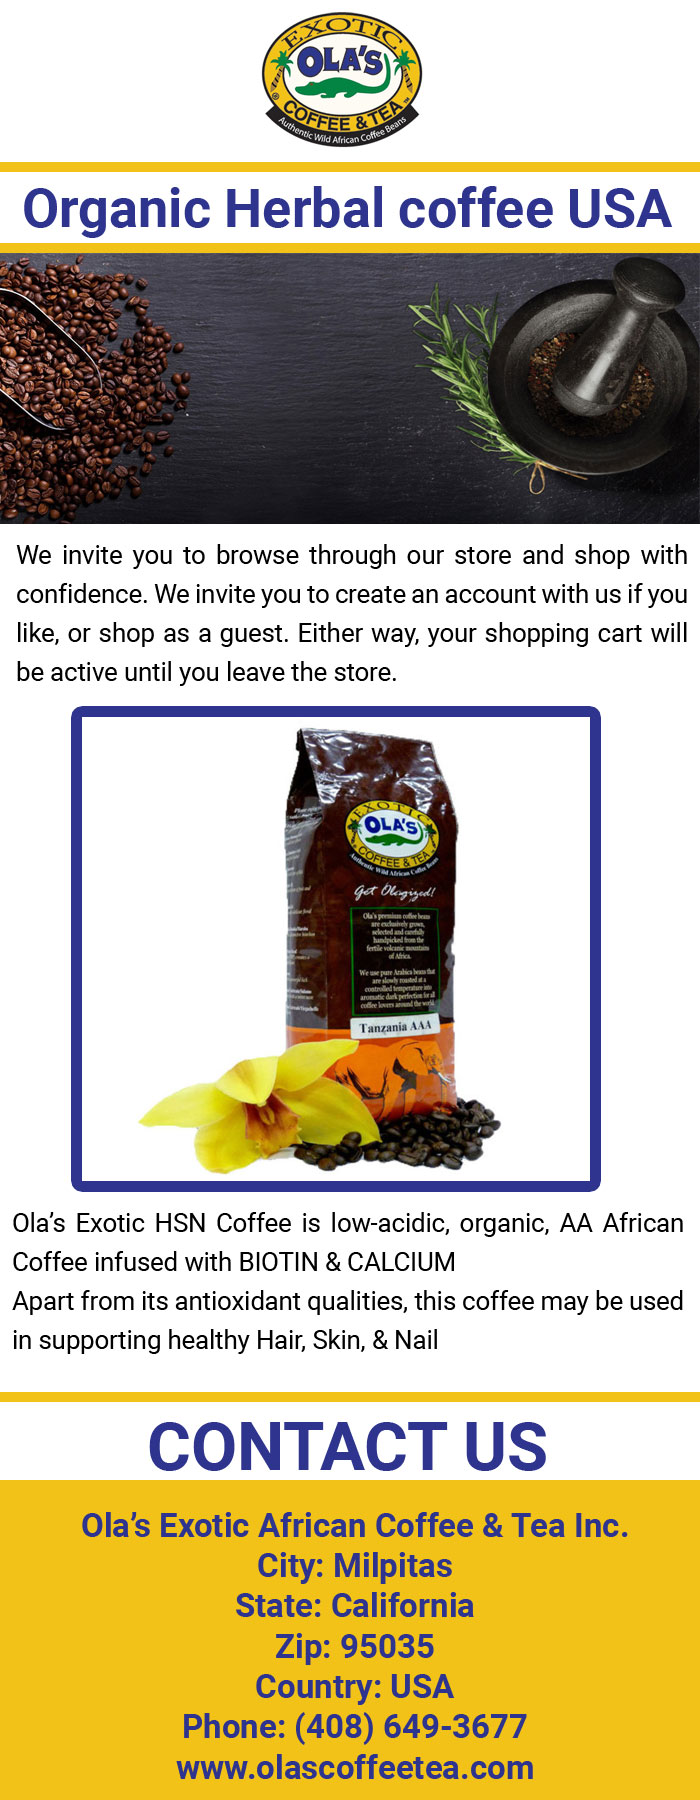 Organic Herbal coffee USA.jpg  by olascoffeetea